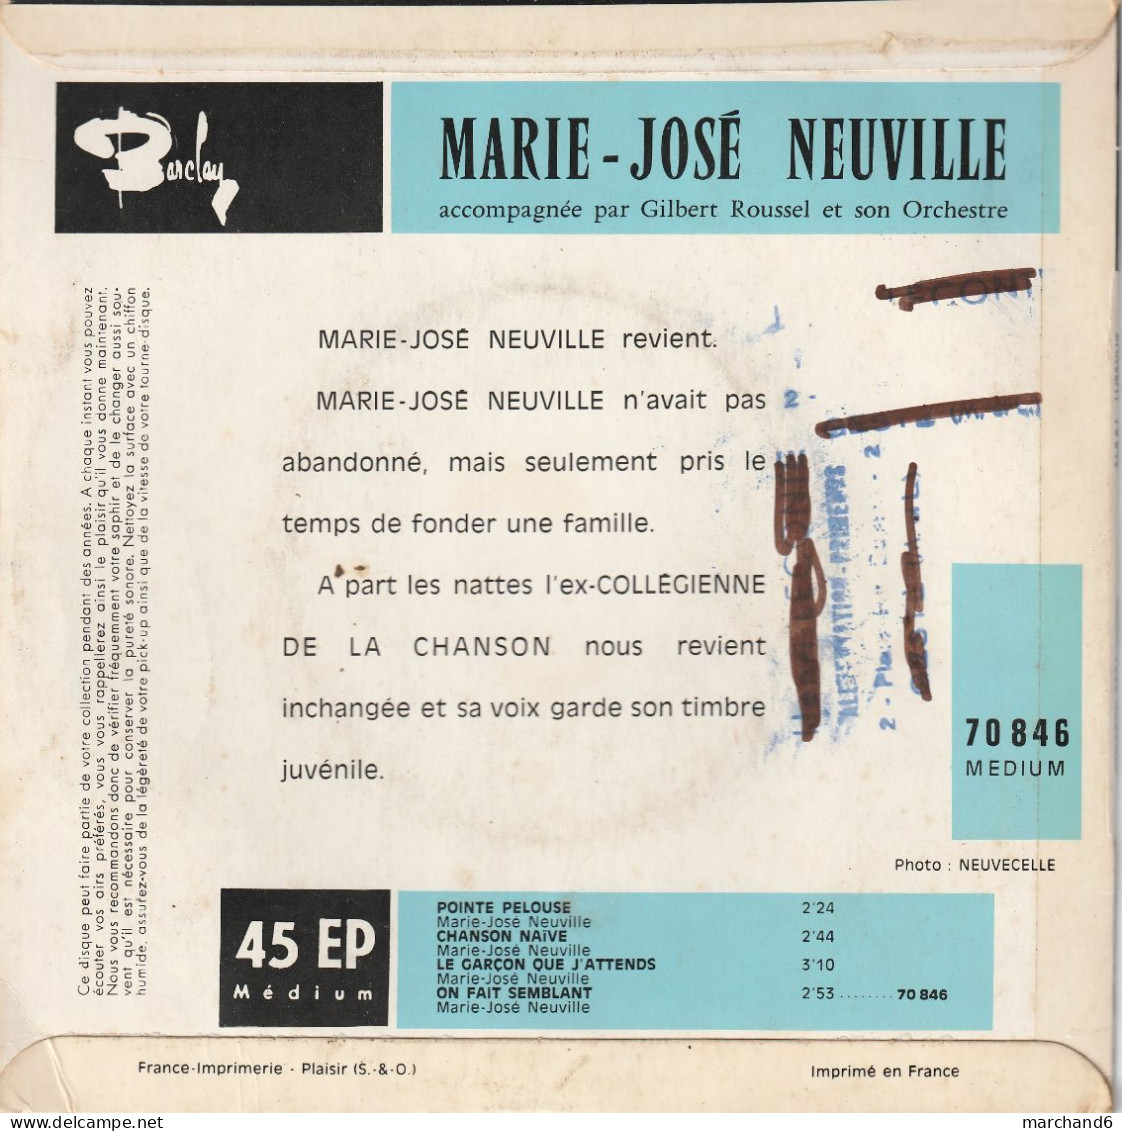 Marie José Neuville Barclay 70846 Le Garçon Que J'attends/chanson Naive/pointe Pelouse/on Fait Semblant - Autres - Musique Française